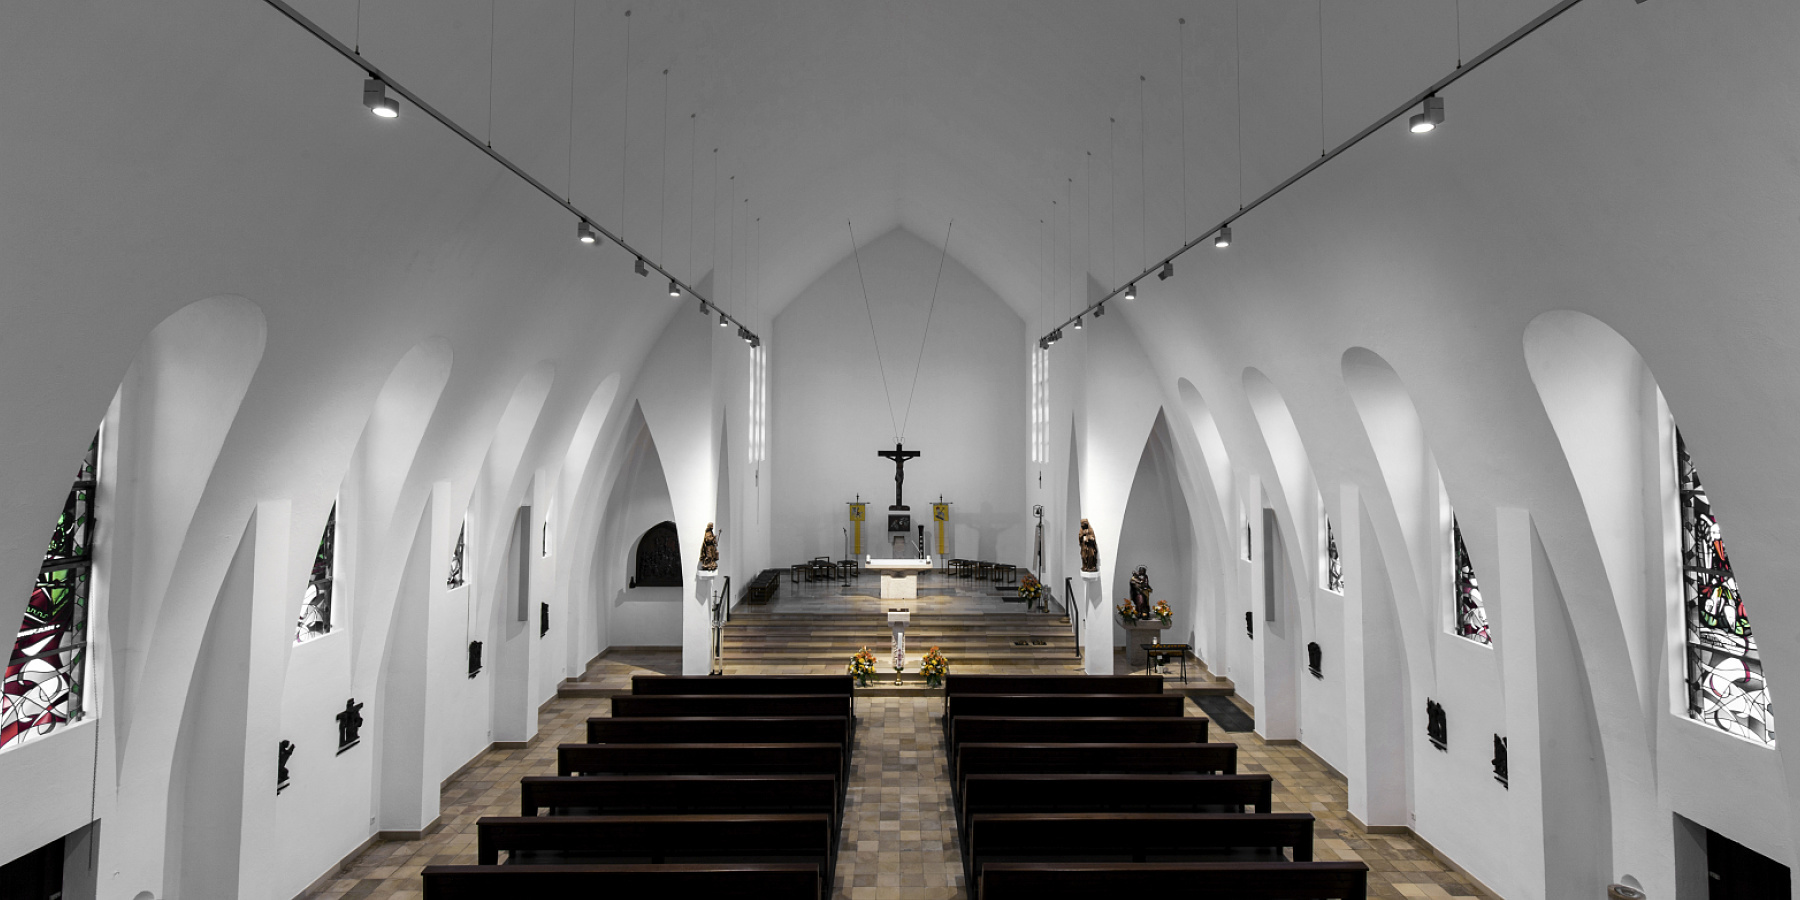 La nuova illuminazione della chiesa parrocchiale di Santa Maria Nascente a Grevenbroich, Grevenbroich, Germania